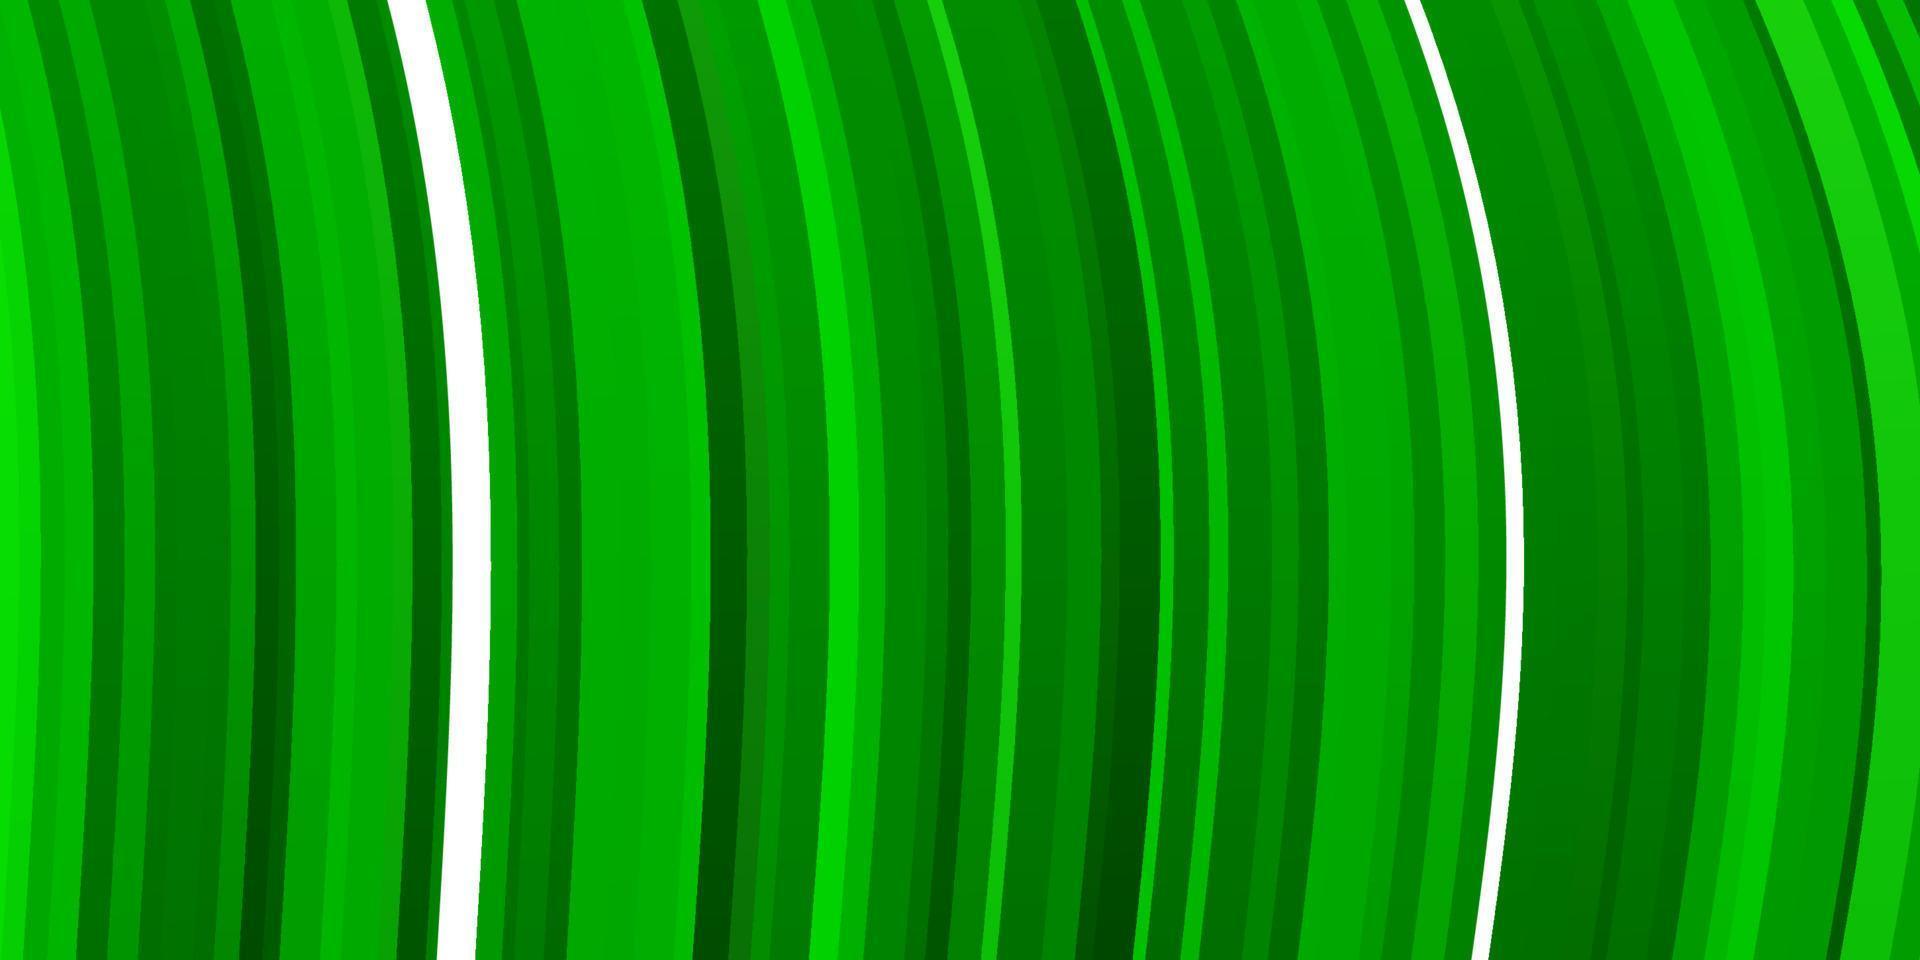 hellgrüne Vektorschablone mit schiefen Linien. vektor